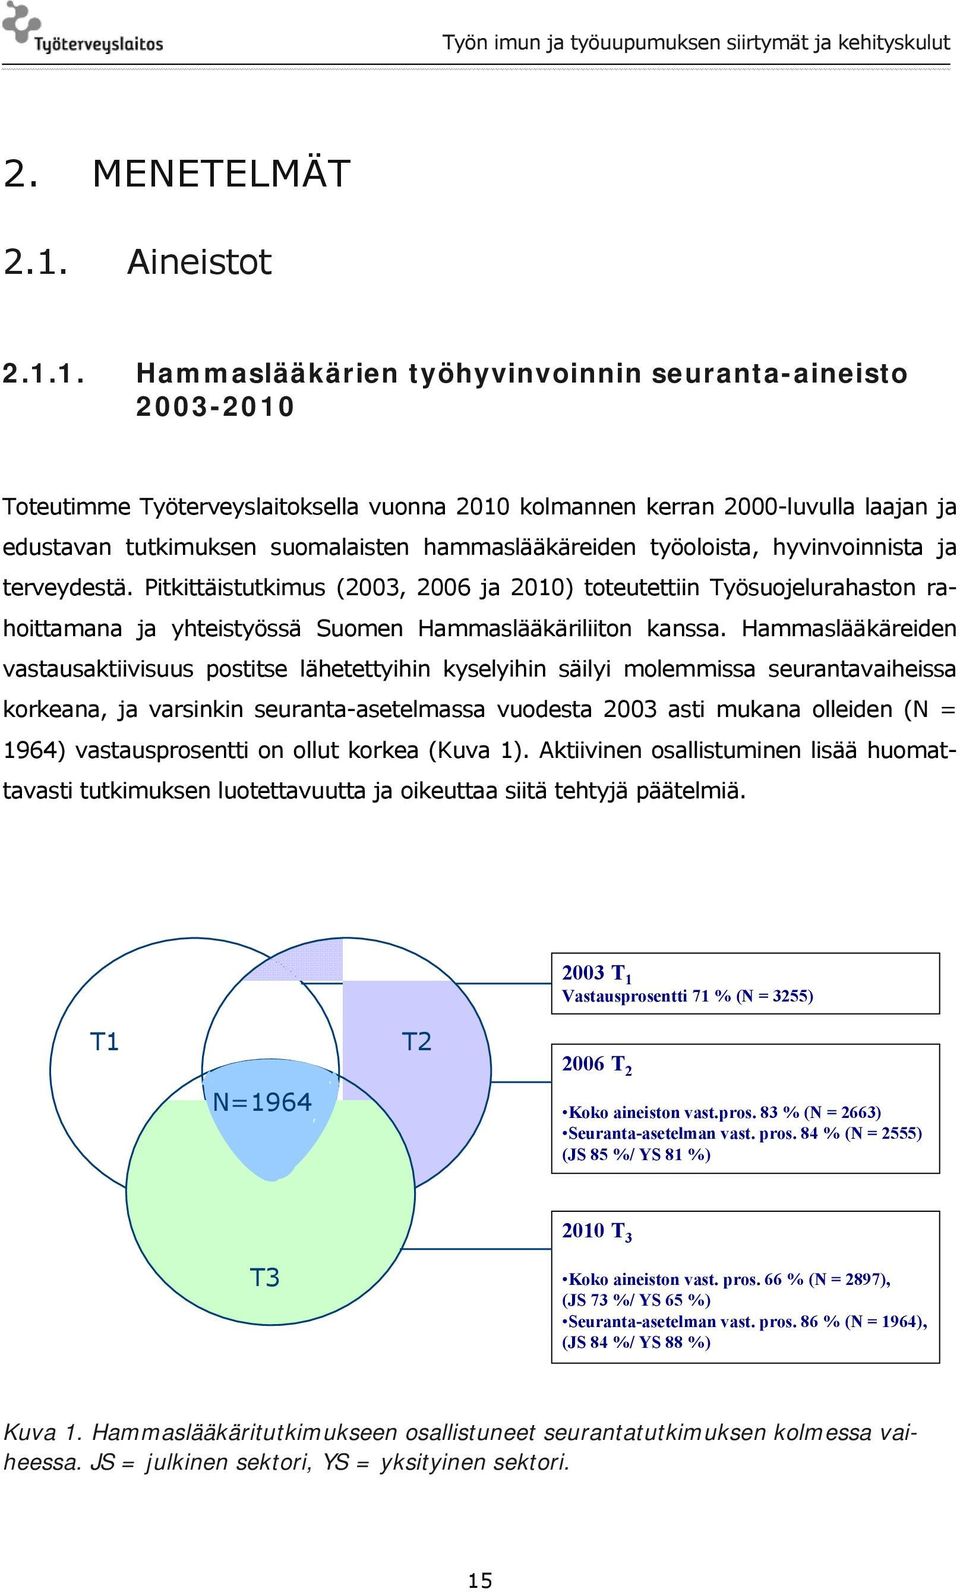 1. Hammaslääkärien työhyvinvoinnin seuranta-aineisto 2003-2010 Toteutimme Työterveyslaitoksella vuonna 2010 kolmannen kerran 2000-luvulla laajan ja edustavan tutkimuksen suomalaisten